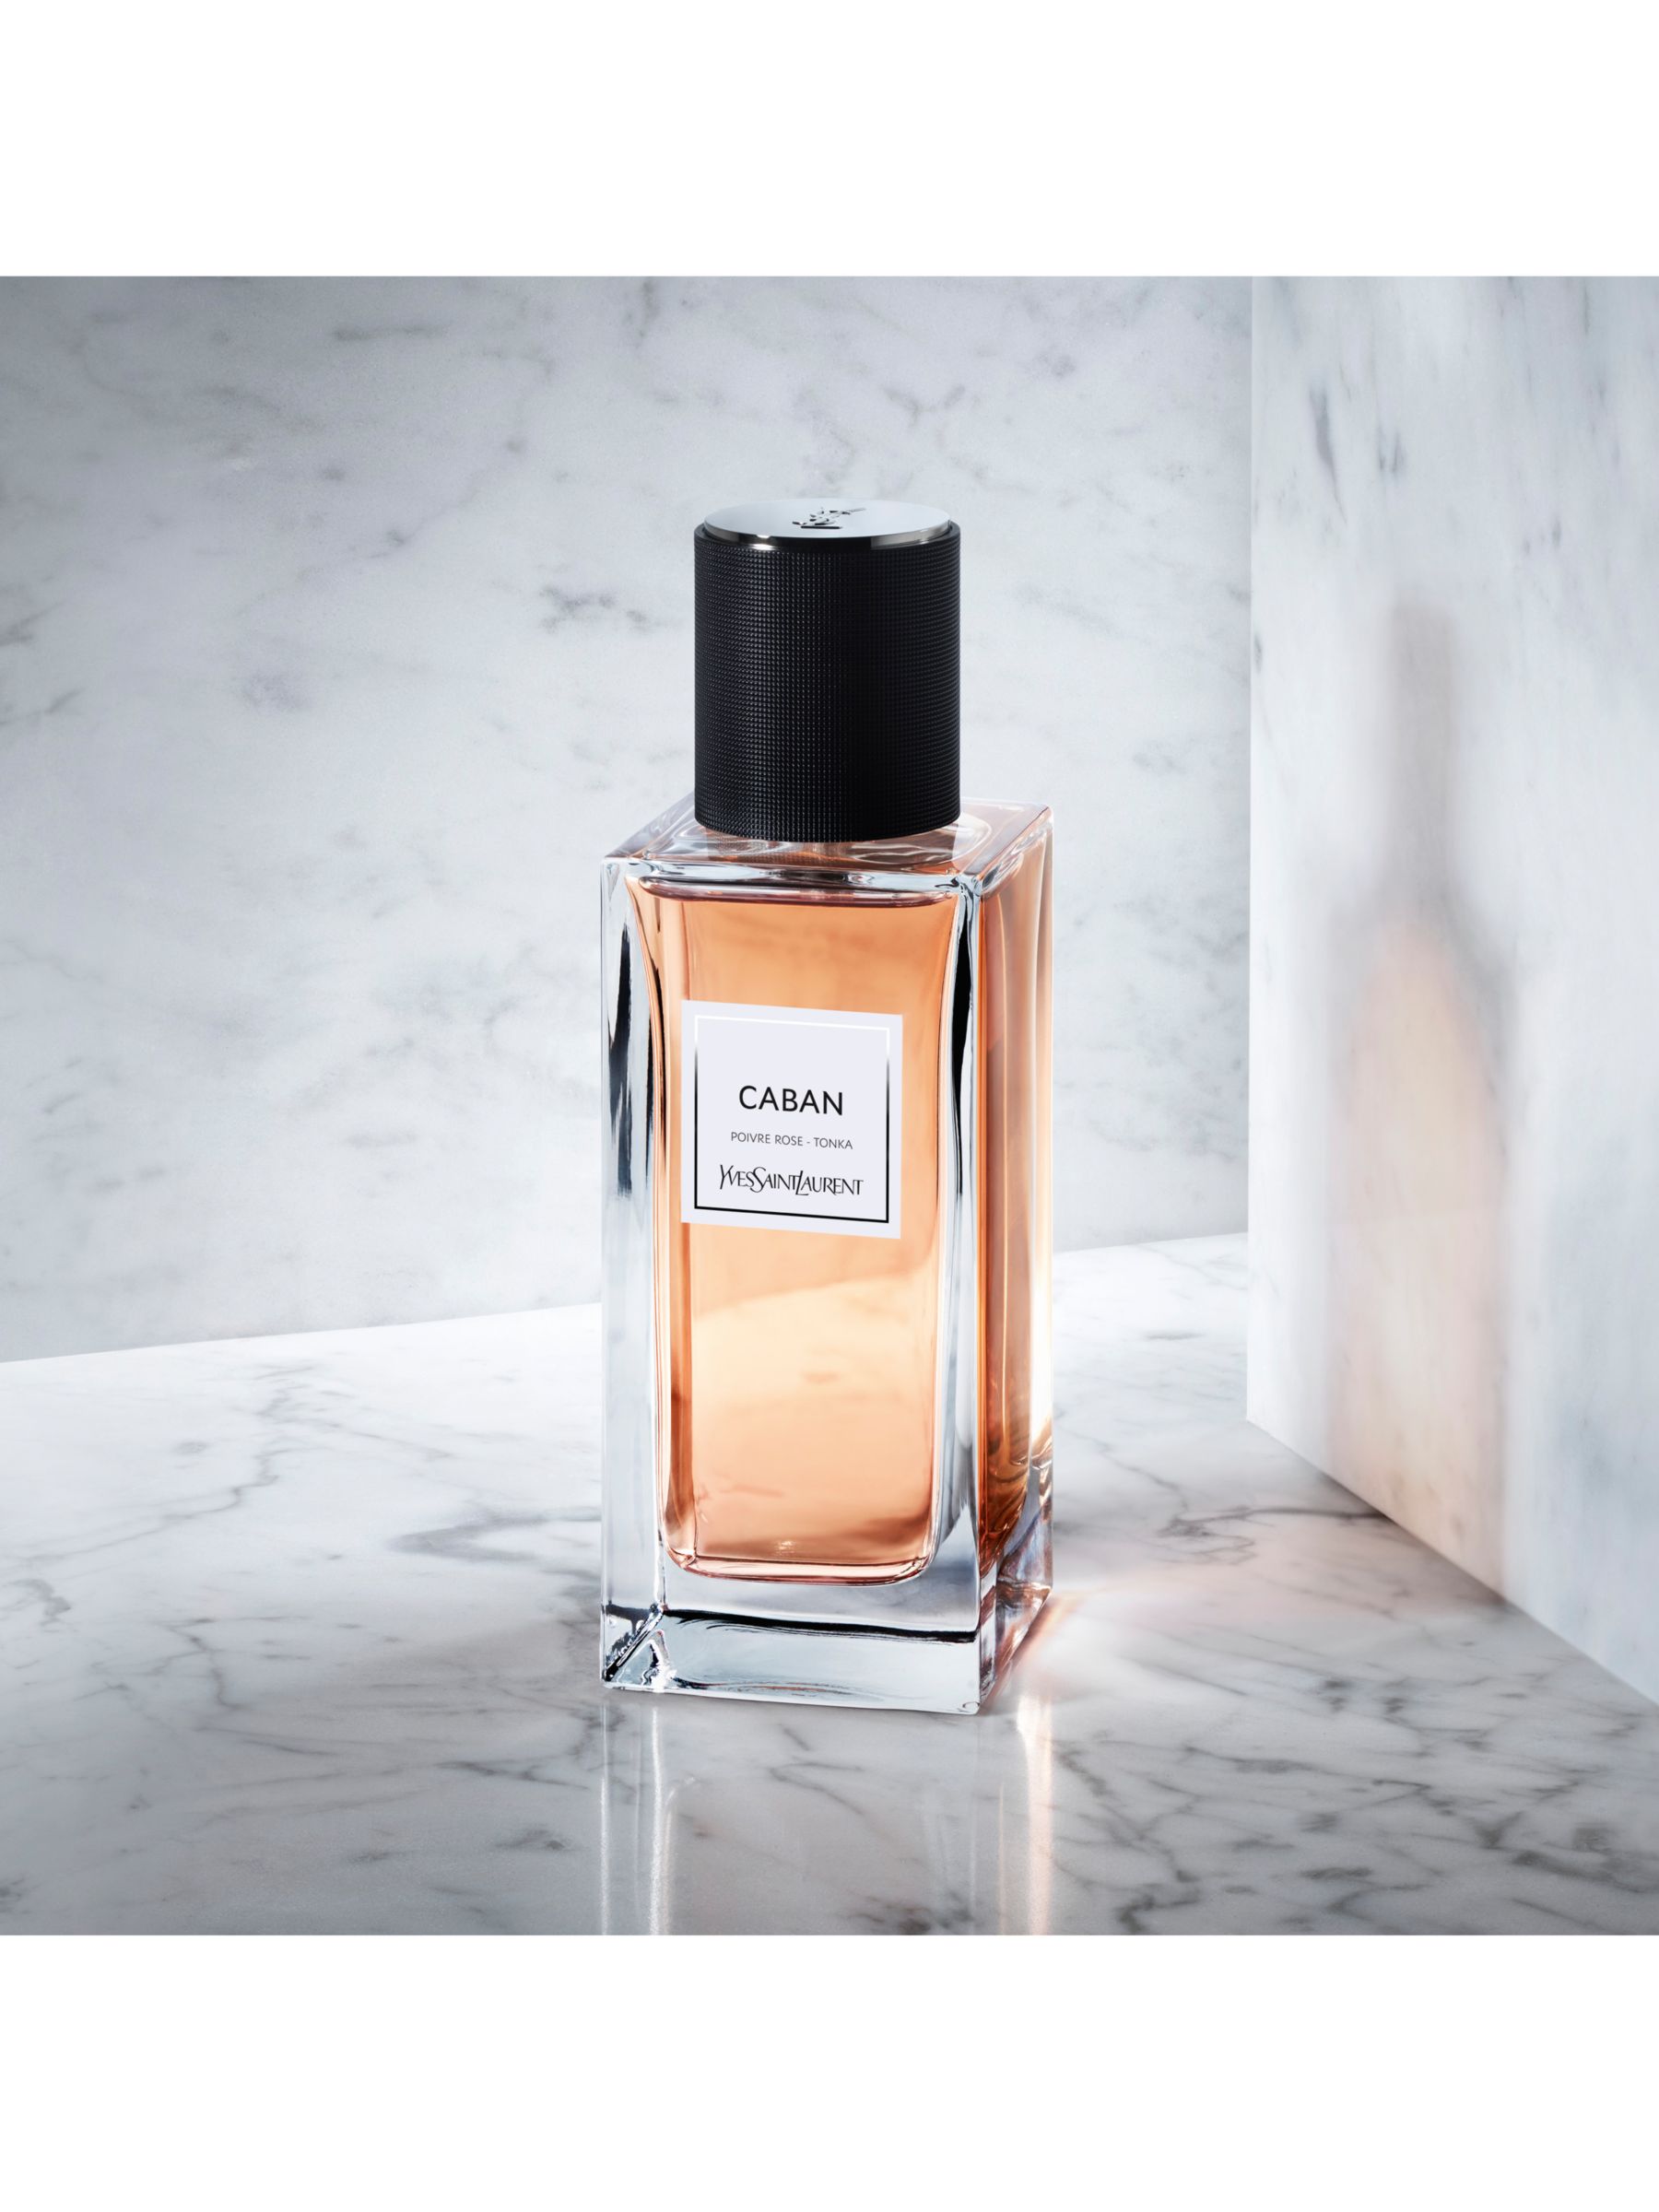 Yves Saint Laurent Caban Eau de Parfum at John Lewis & Partners